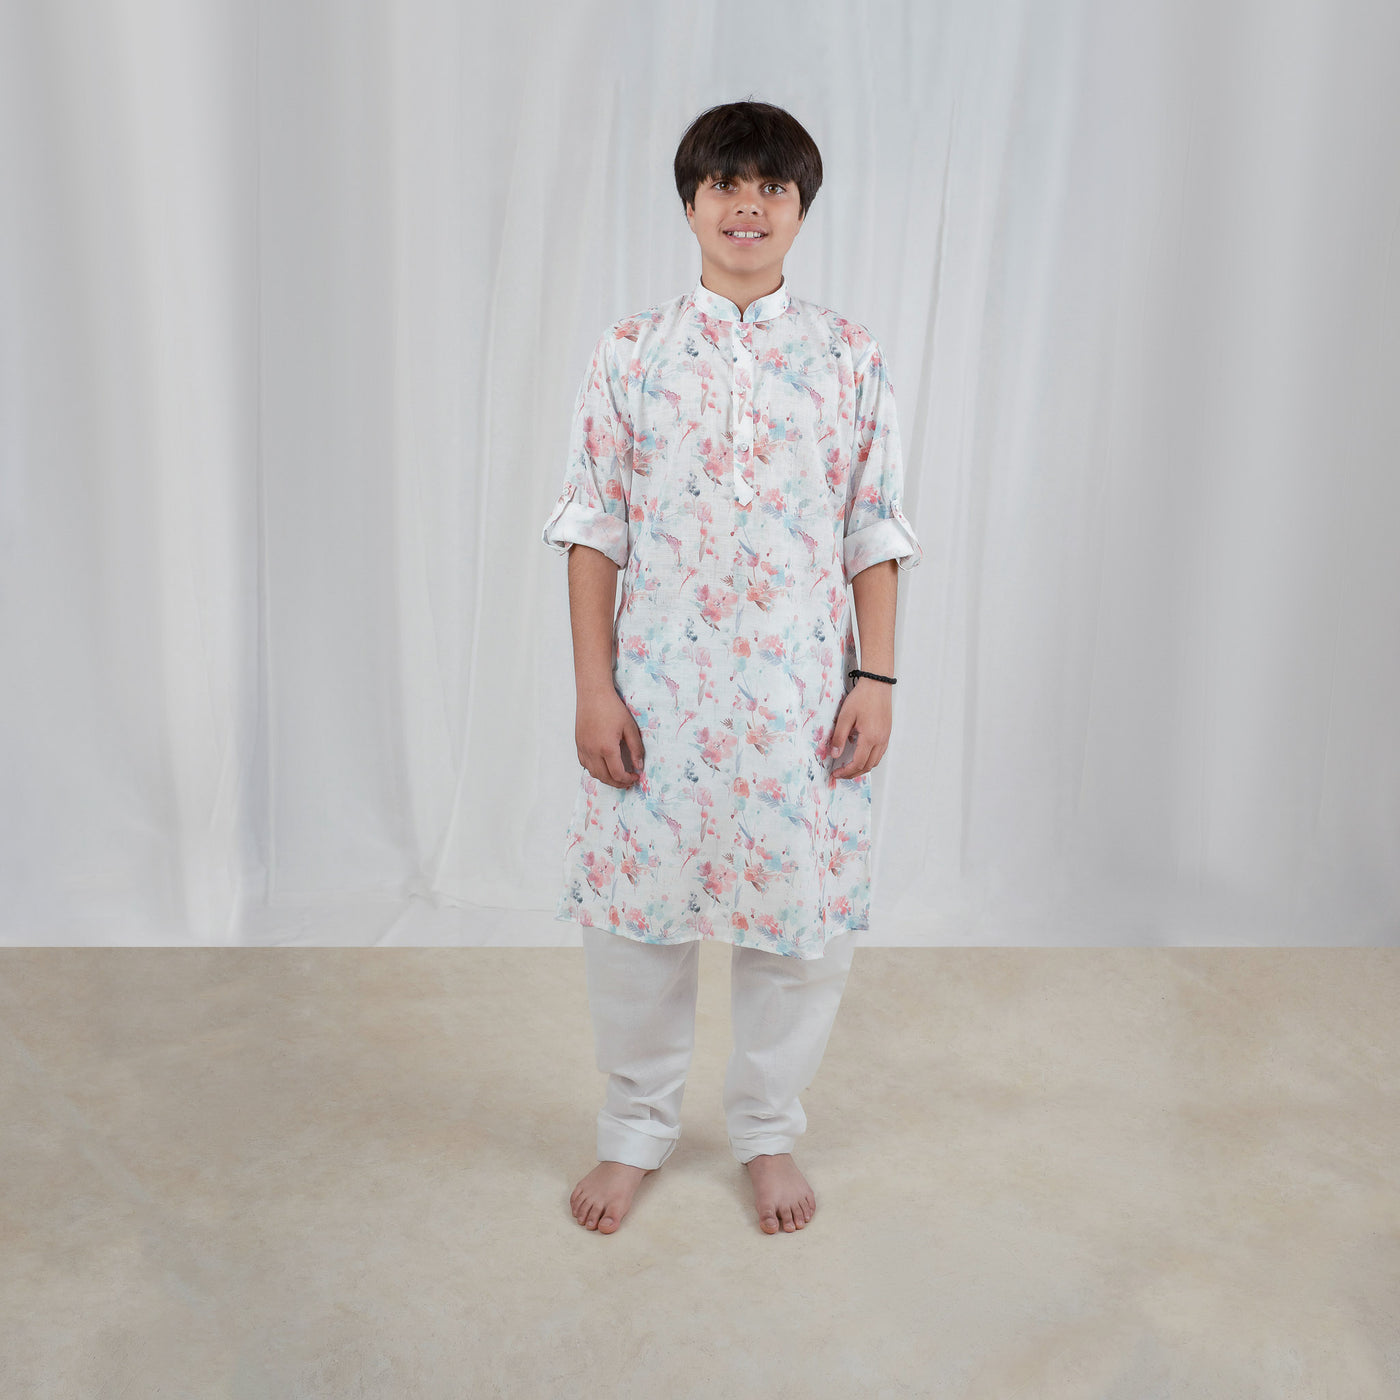 KAYDEN - Floral Printed Cotton Linen Kurta Pajama